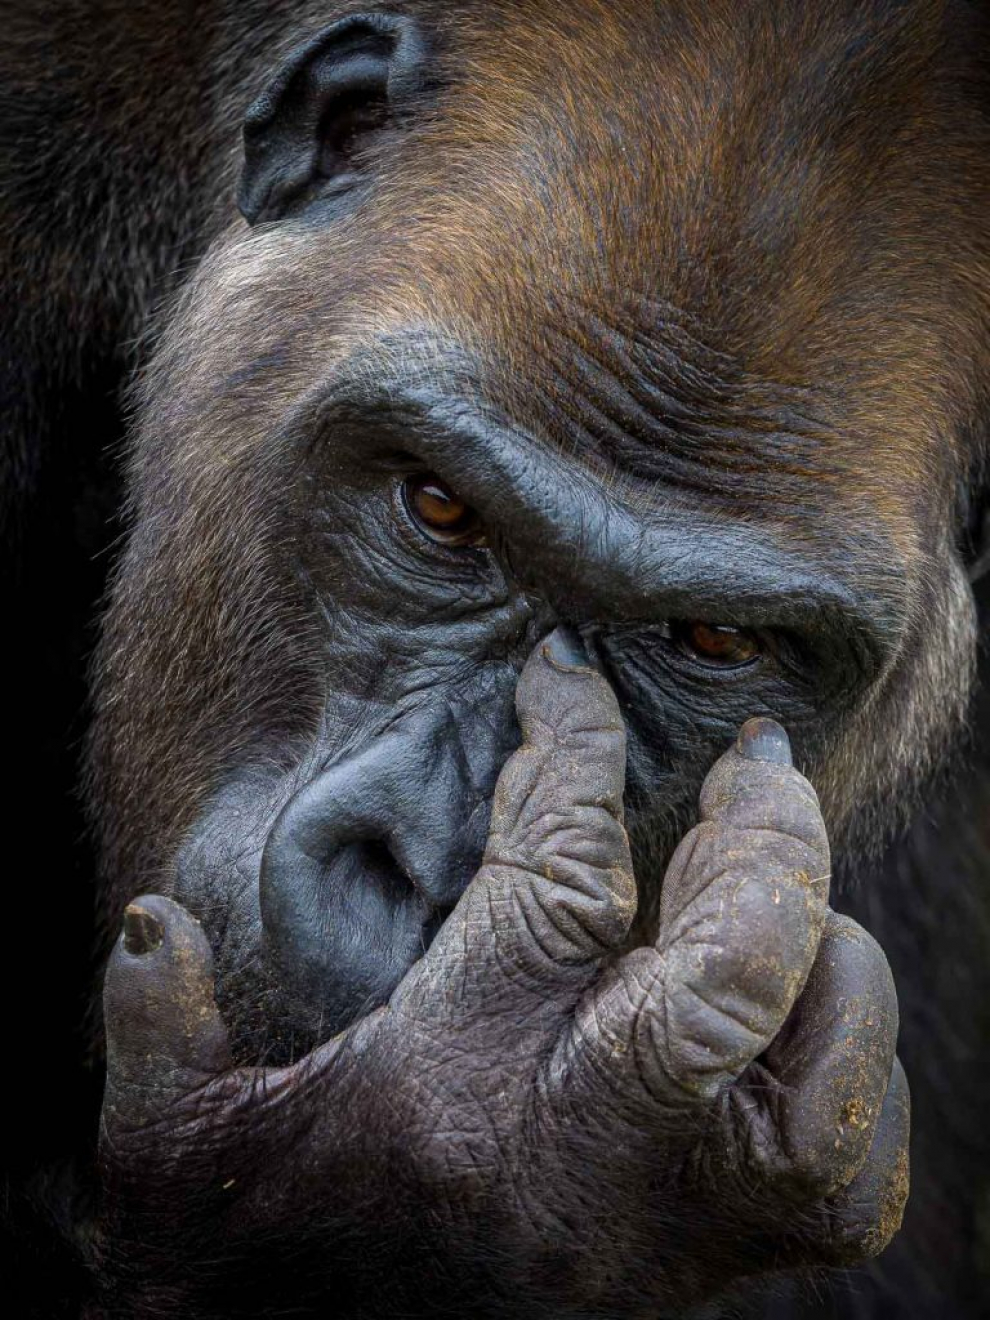 Finalista categoría Retratos Salvajes. Retrato de un gorila occidental de las tierras bajas llamado Kangu, que vive en la reserva Lesio Louna en la República del Congo. Kangu tiene ahora veinte años, la mayor parte de los cuales los ha pasado en el zoológico de Londres. Ahora se está adaptando a vivir en la naturaleza y con suerte pronto podrá regresar al bosque.